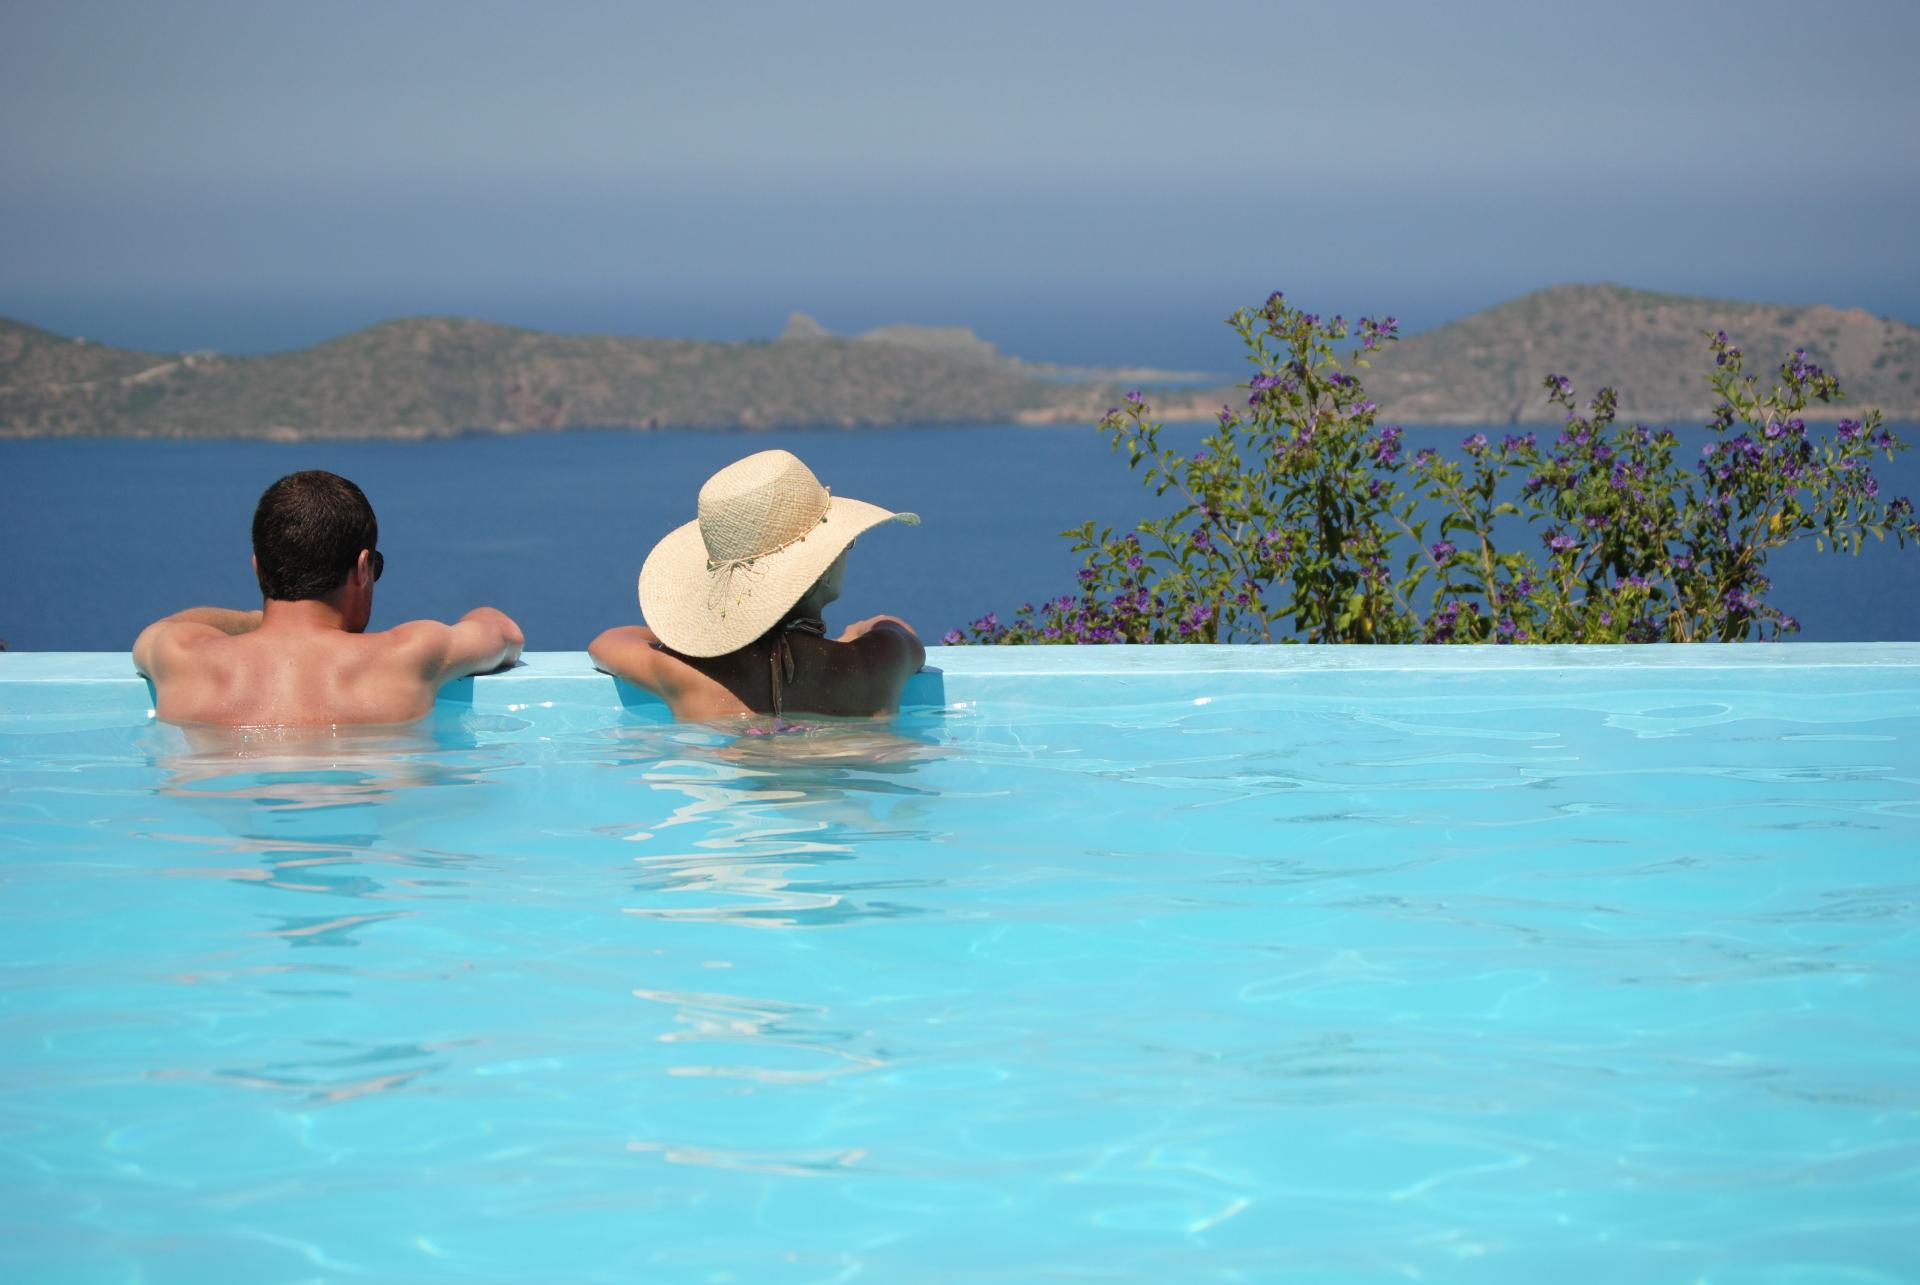 Ferienhaus mit Privatpool für 4 Personen  + 2 Ferienhaus in Griechenland